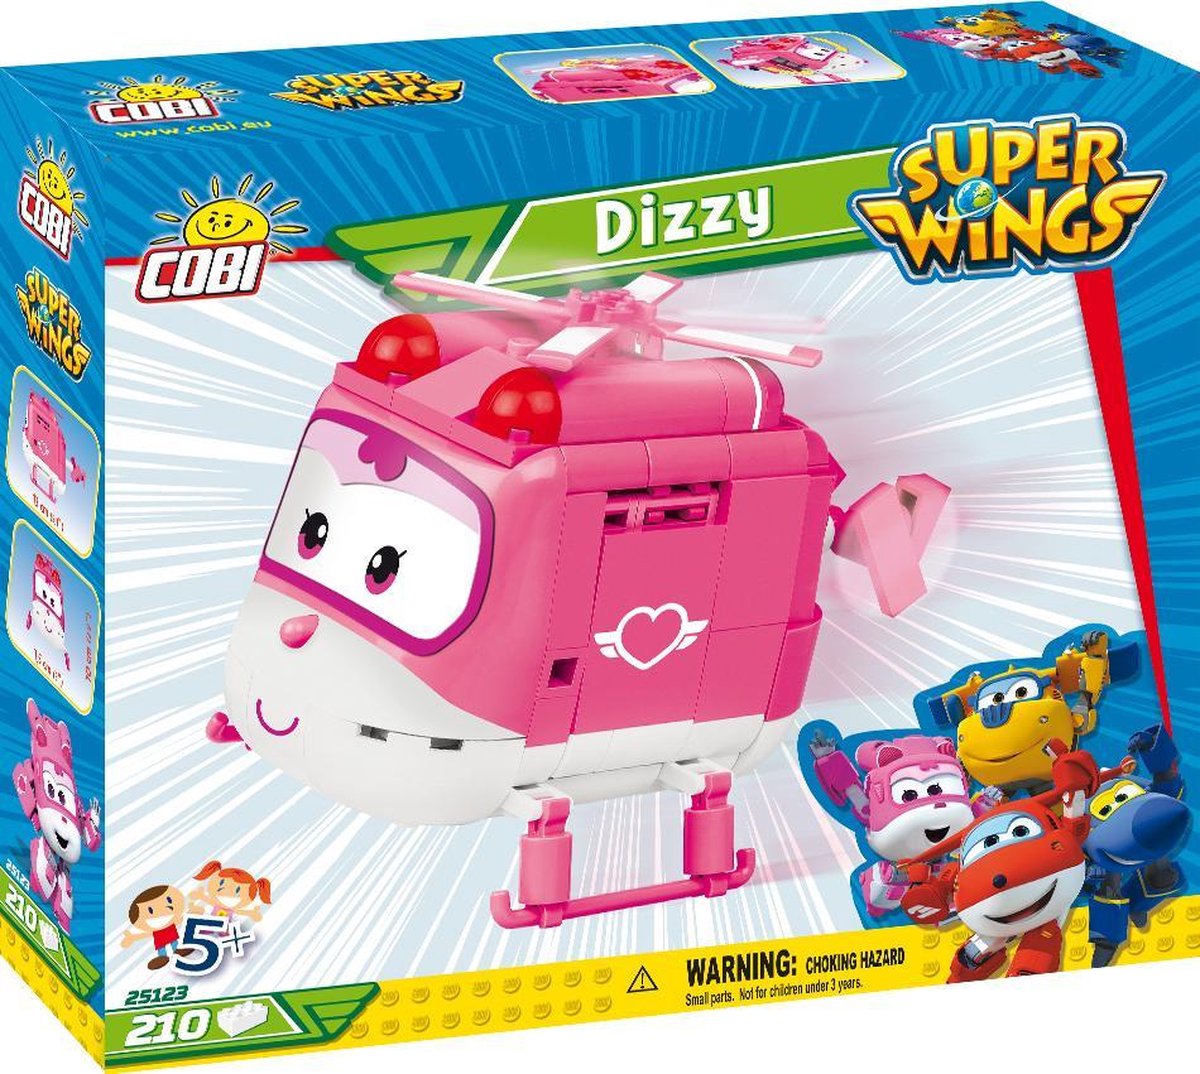 Cobi Super Wings bouwpakket Dizzy/wit 210 delig (25123) - Roze